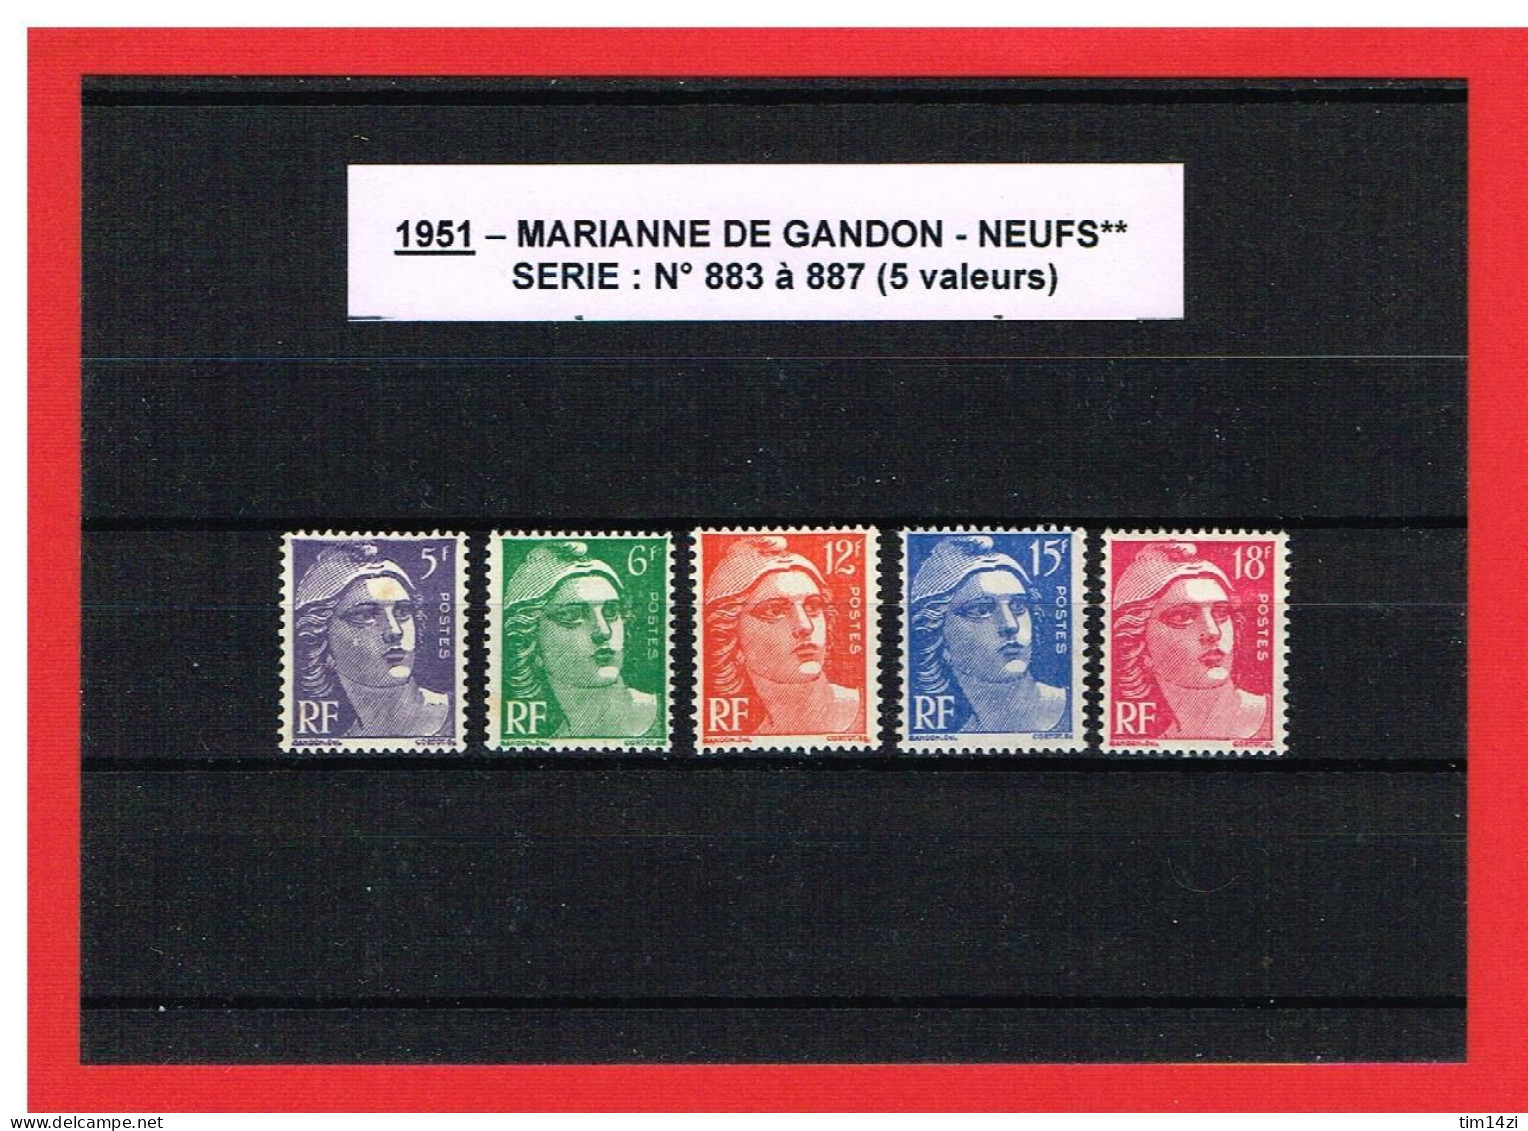 1951 - TYPE MARIANNE DE GANDON - NEUFS** - N° 883 à 887 - COTE Y & T : 28.00 Euros - Ungebraucht